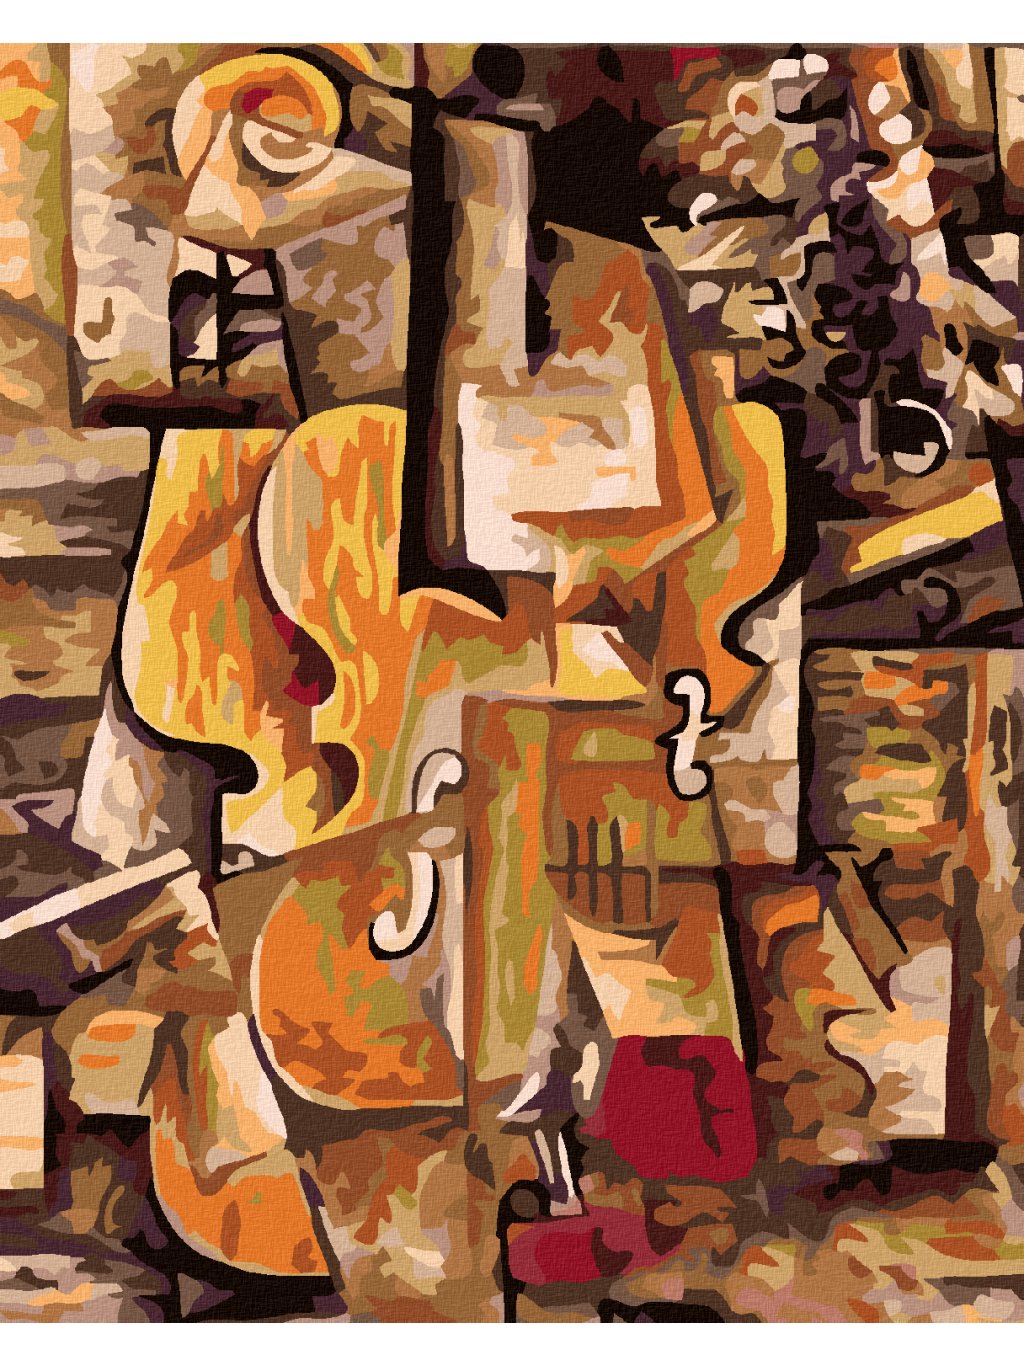 Haft diamentowy - Skrzypce i winogrono (Picasso)